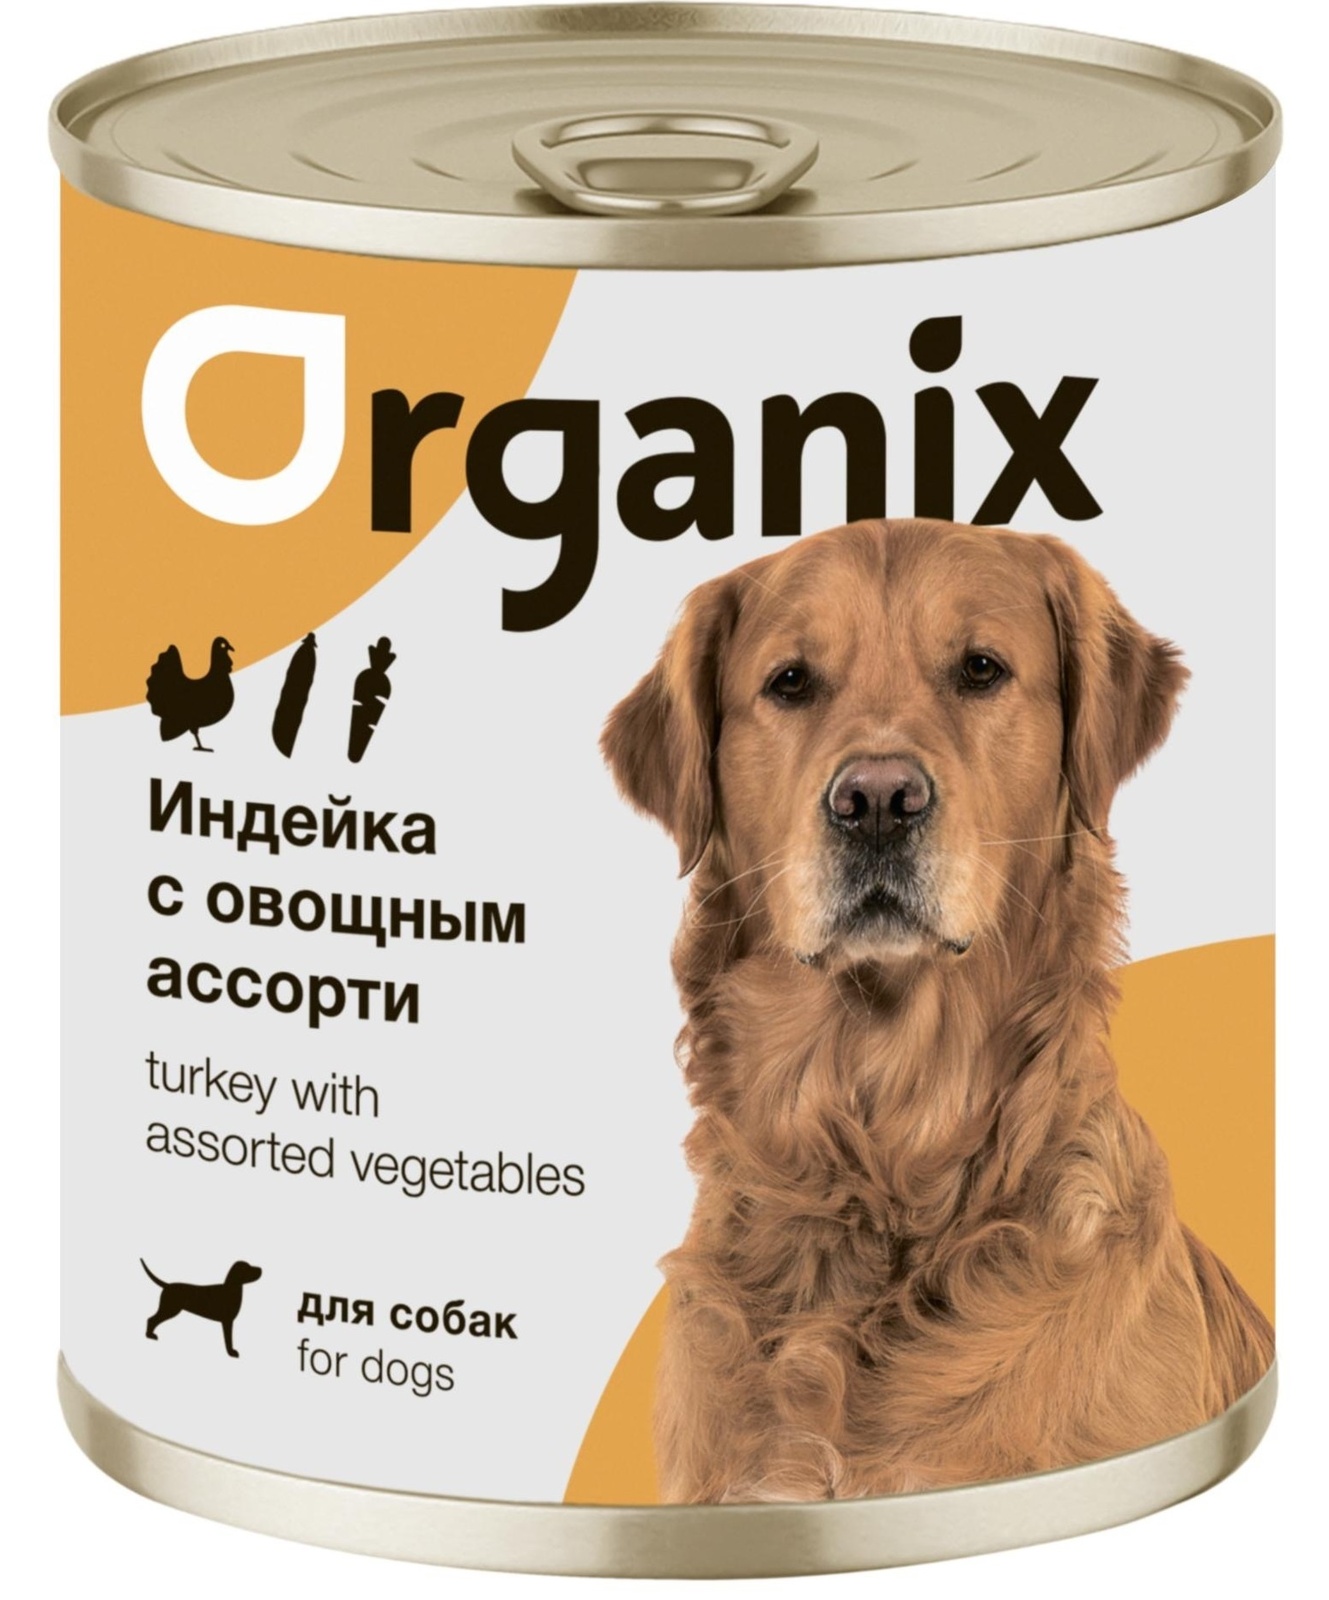 Organix консервы Organix консервы для собак Индейка с овощным ассорти (100 г) organix консервы organix консервы для собак телятина с зеленой фасолью 100 г